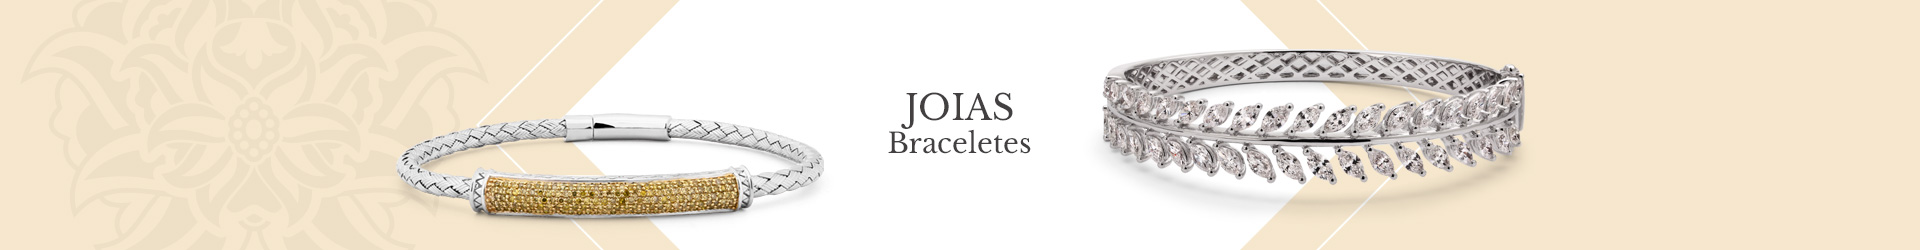 Joias Braceletes